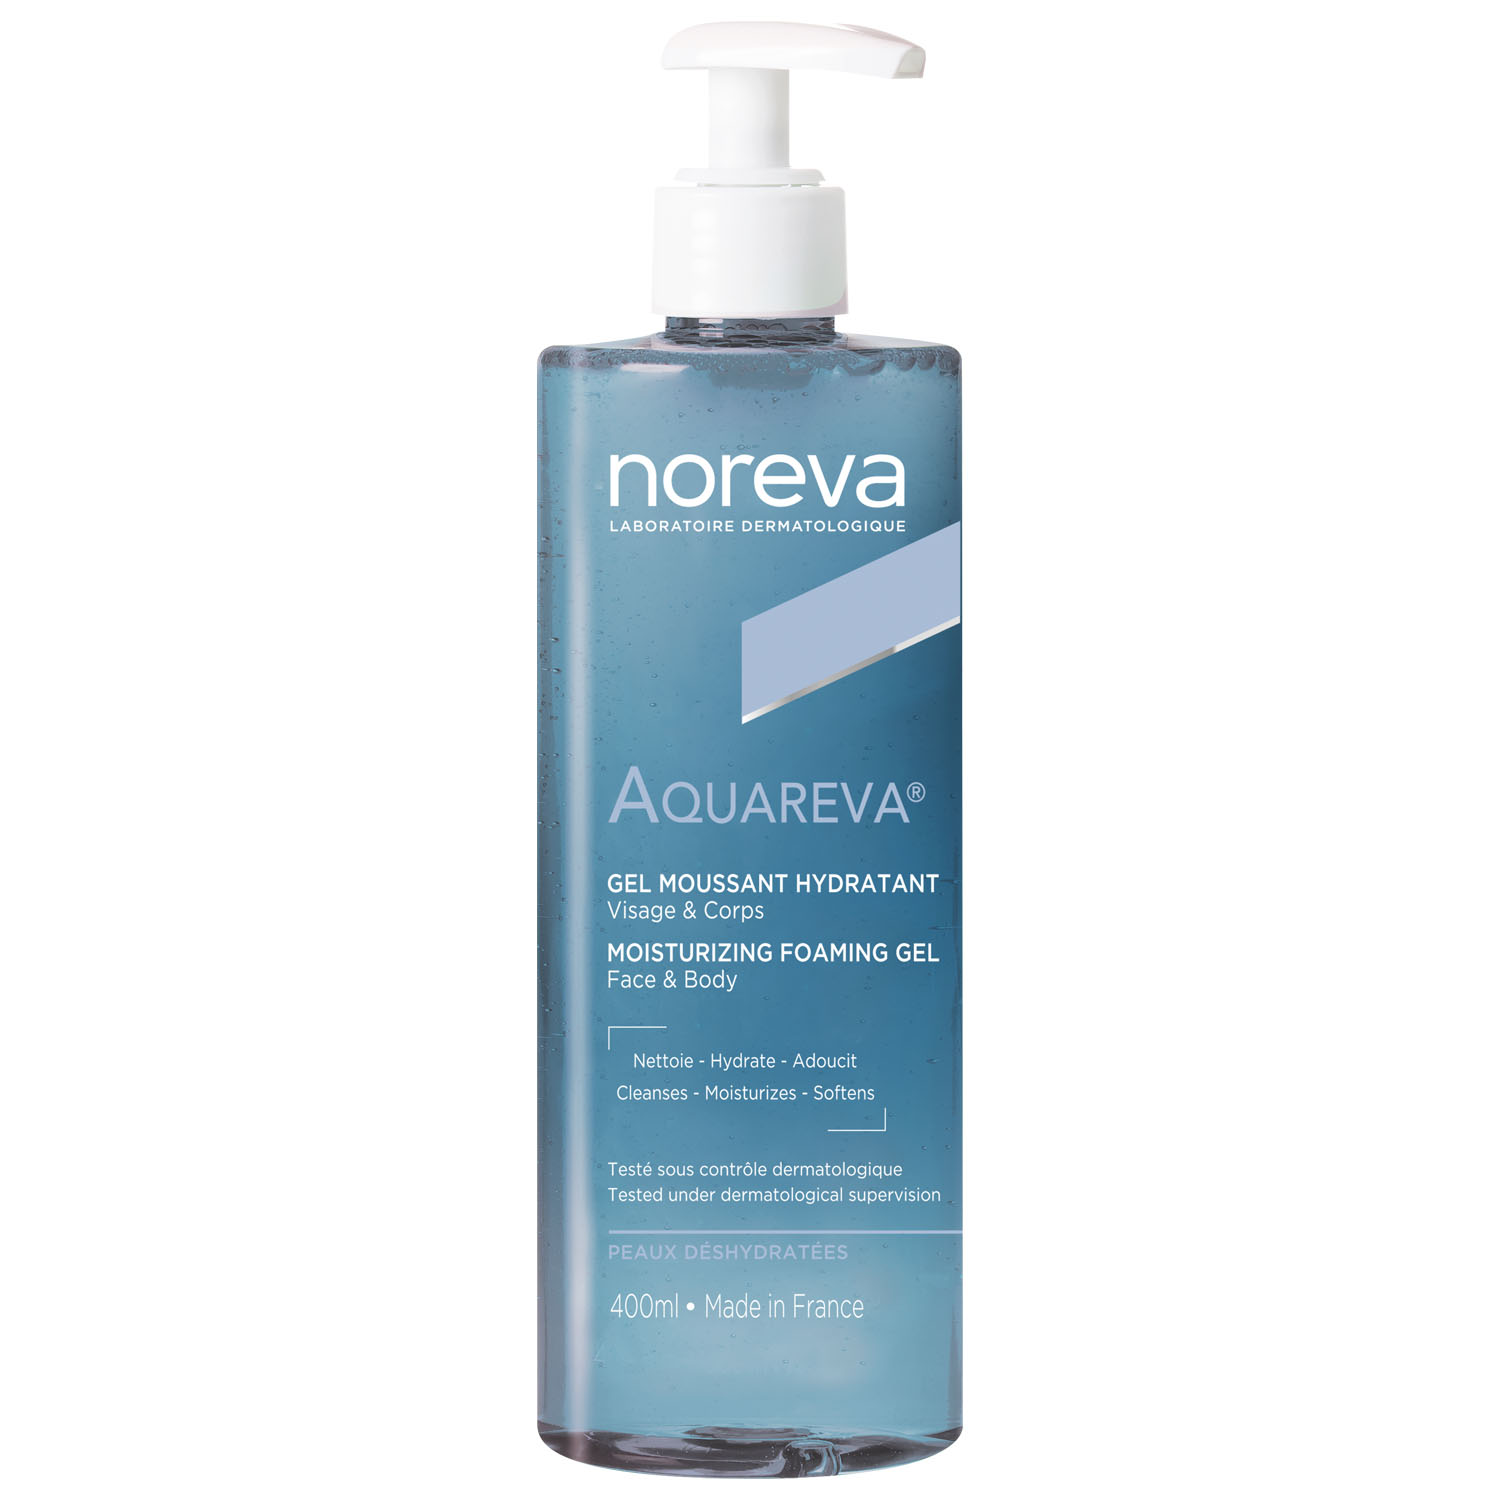 Noreva Очищающий увлажняющий гель для лица и тела, 400 мл (Noreva, Aquareva)